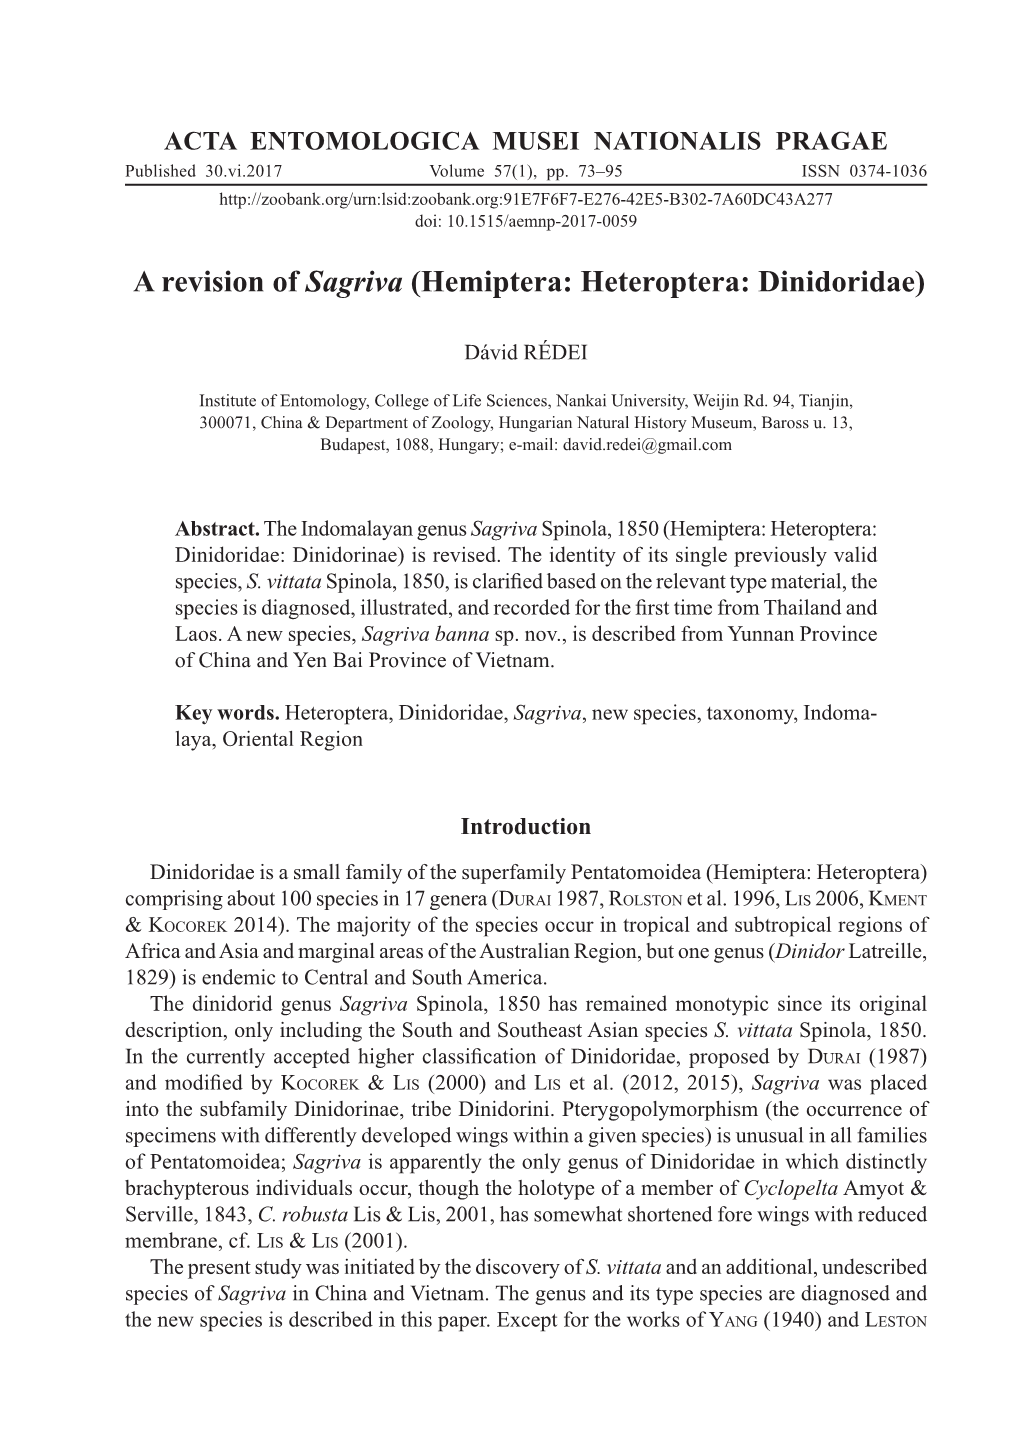 A Revision of Sagriva (Hemiptera: Heteroptera: Dinidoridae)